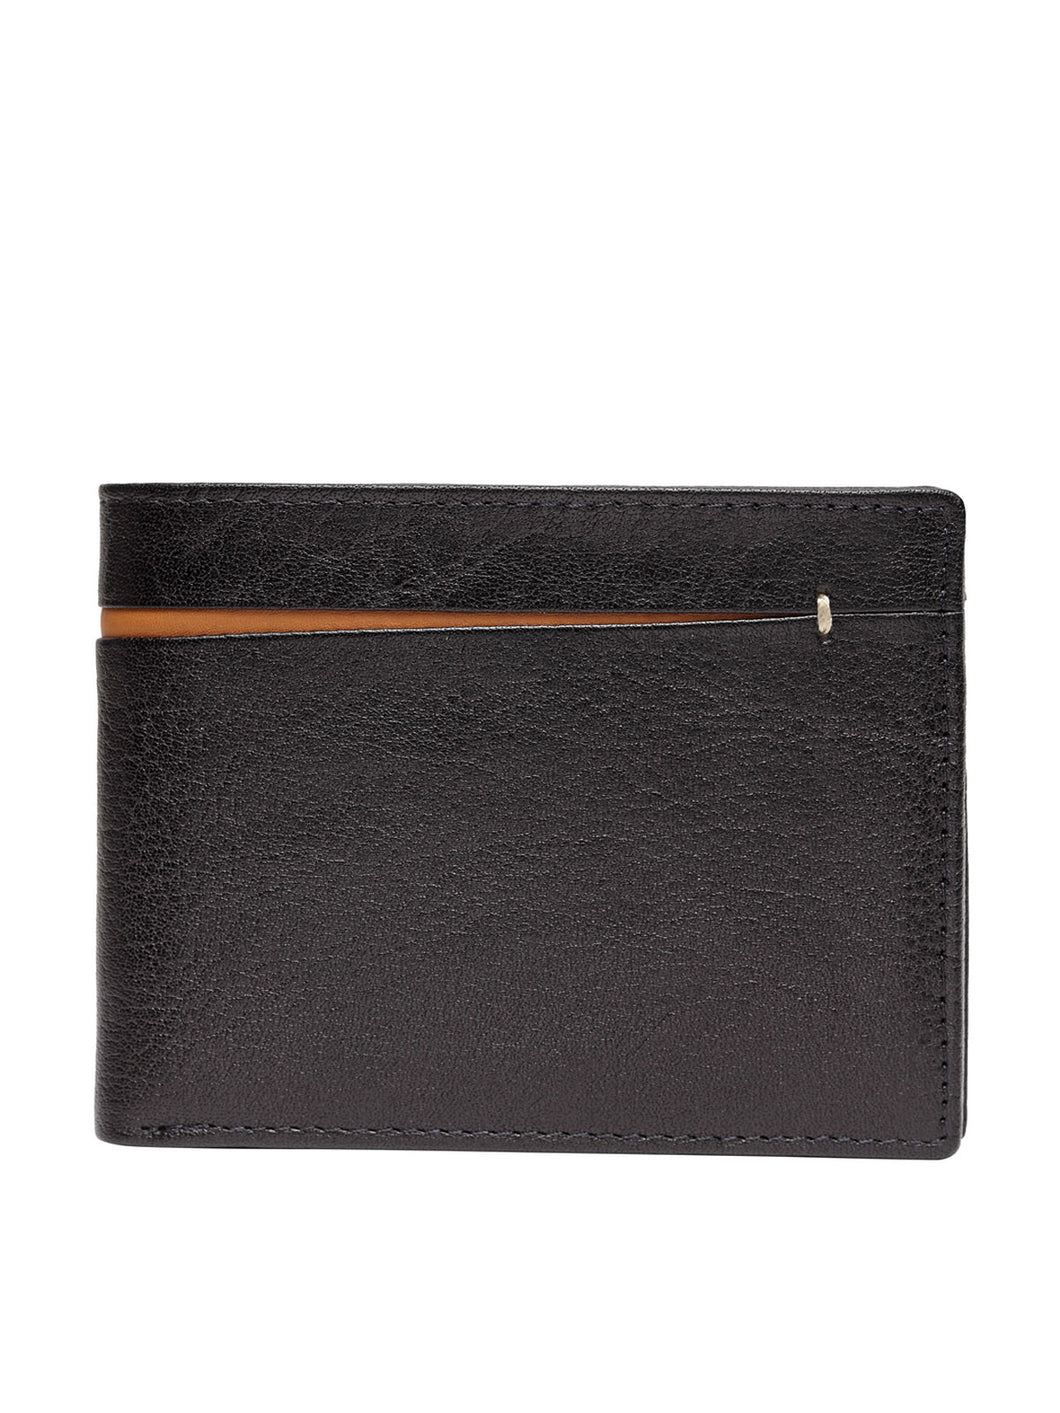 Teakwood Genuine Leather Wallets - Multi